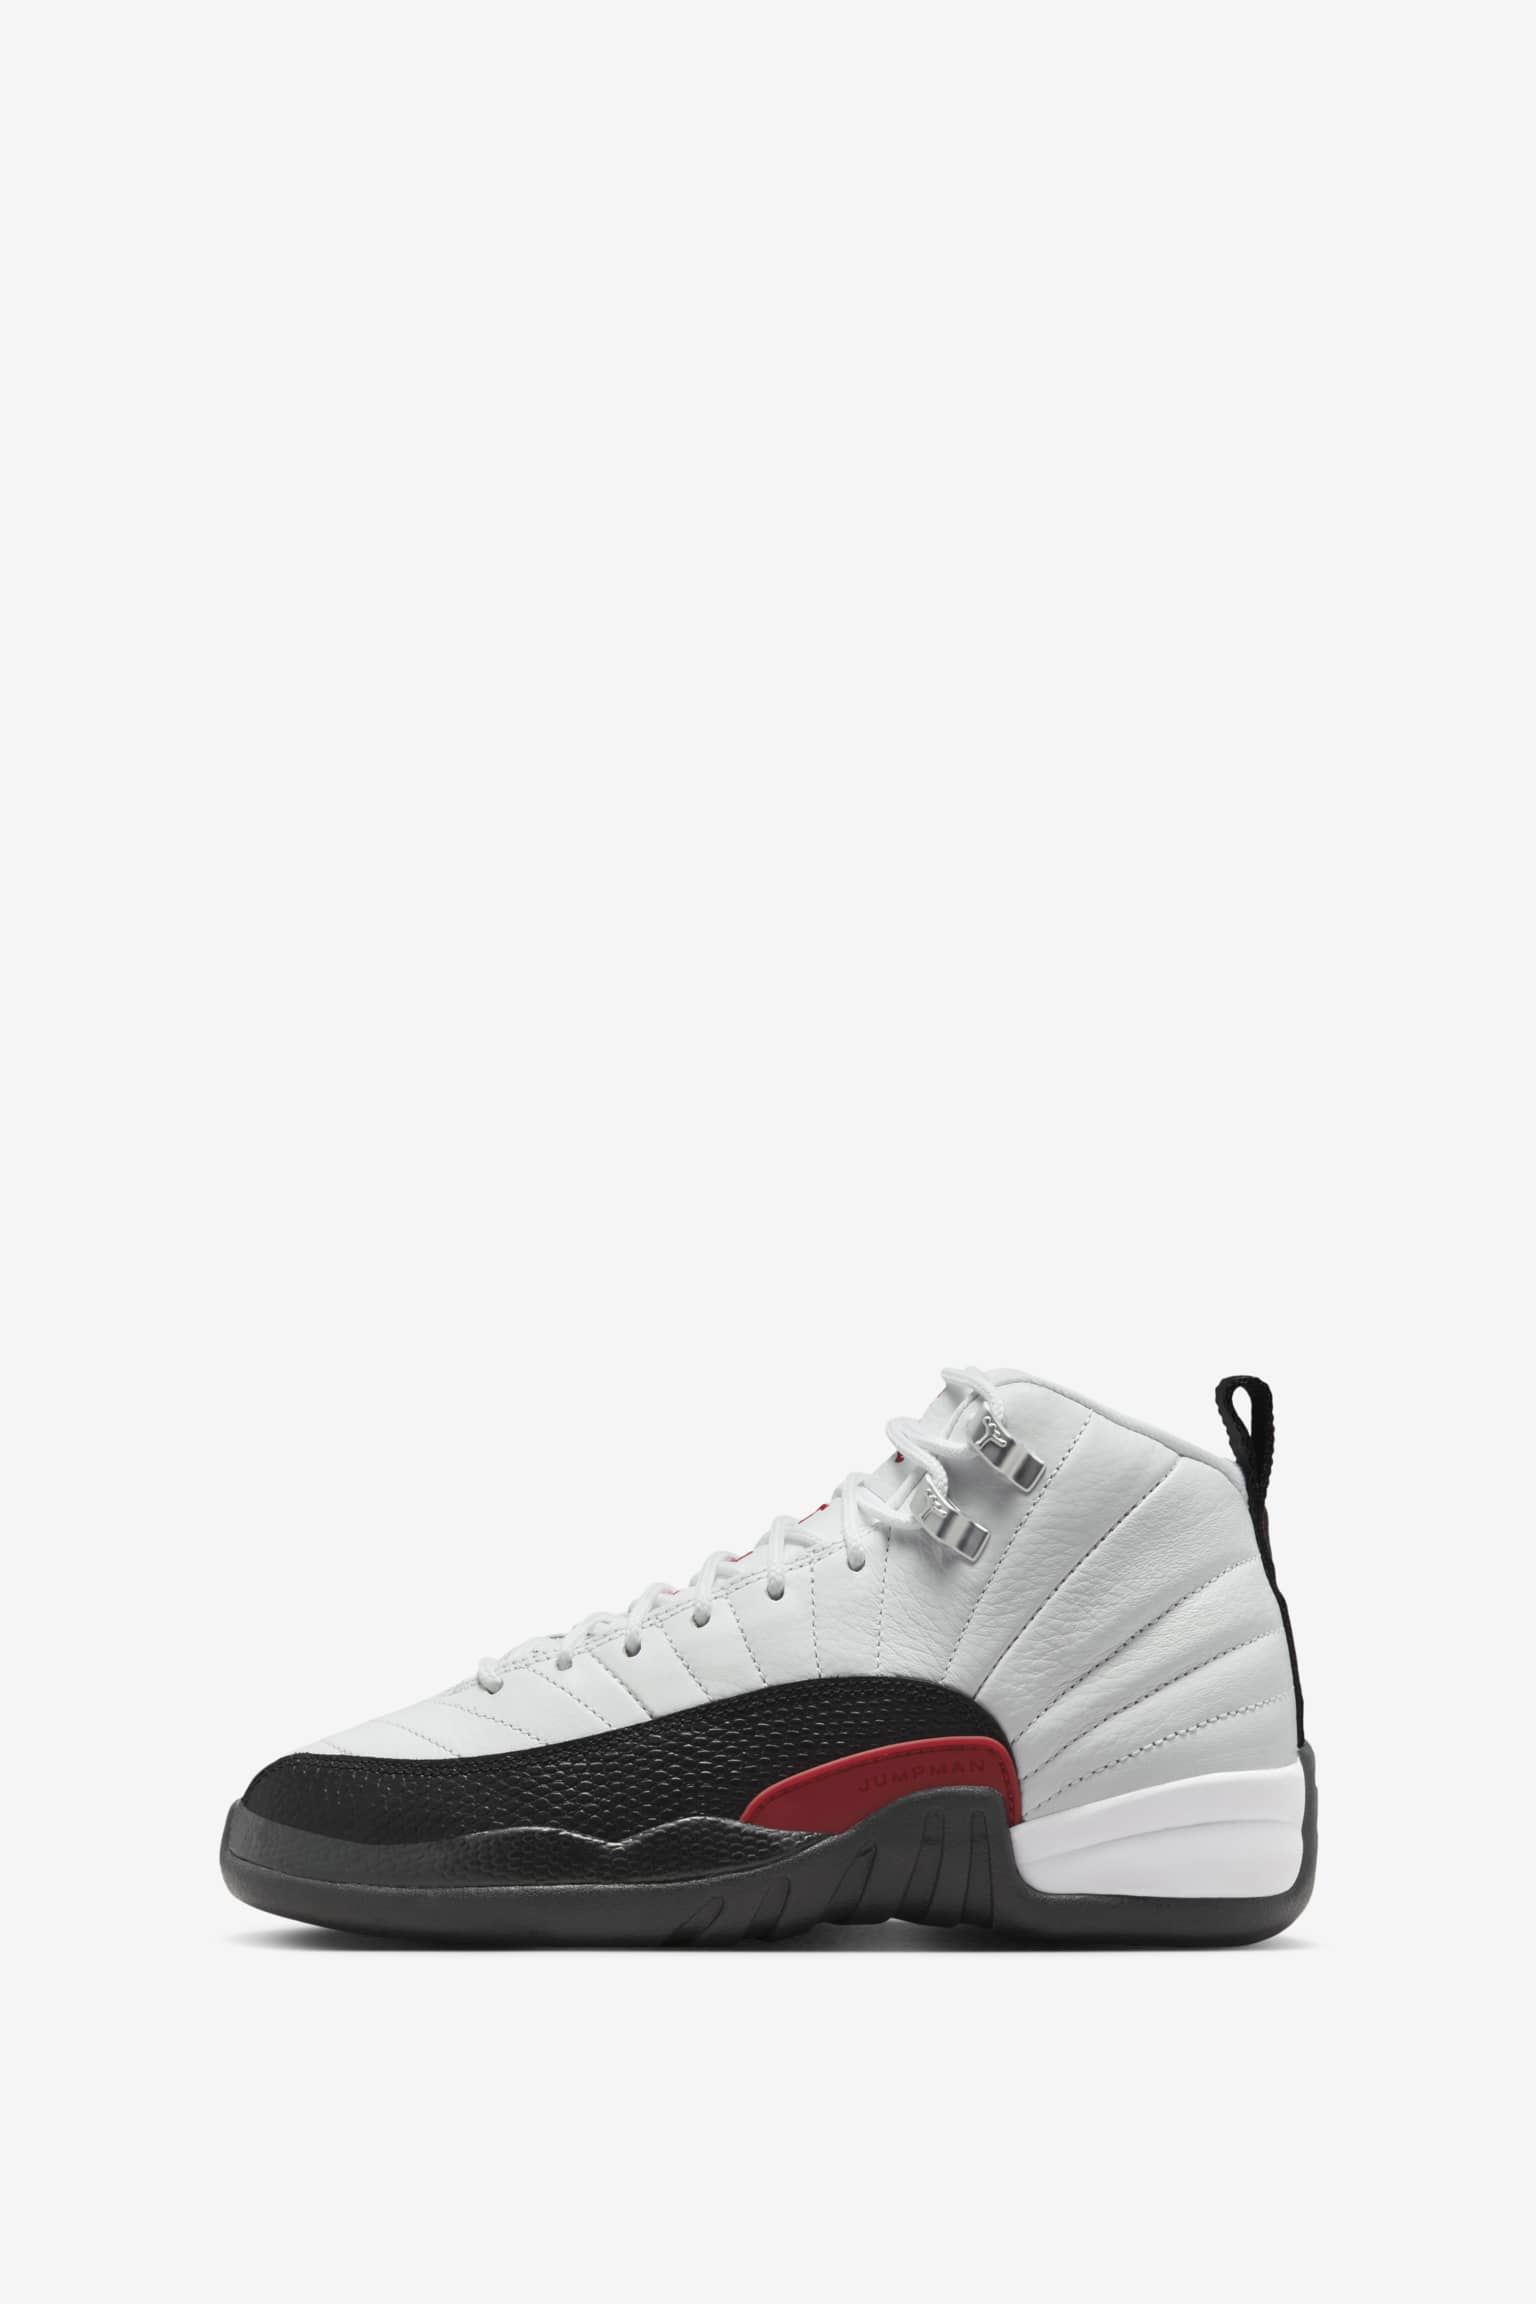 Air Jordan 12 'Taxi Flip' (CT8013-162) Release Date. Nike SNKRS